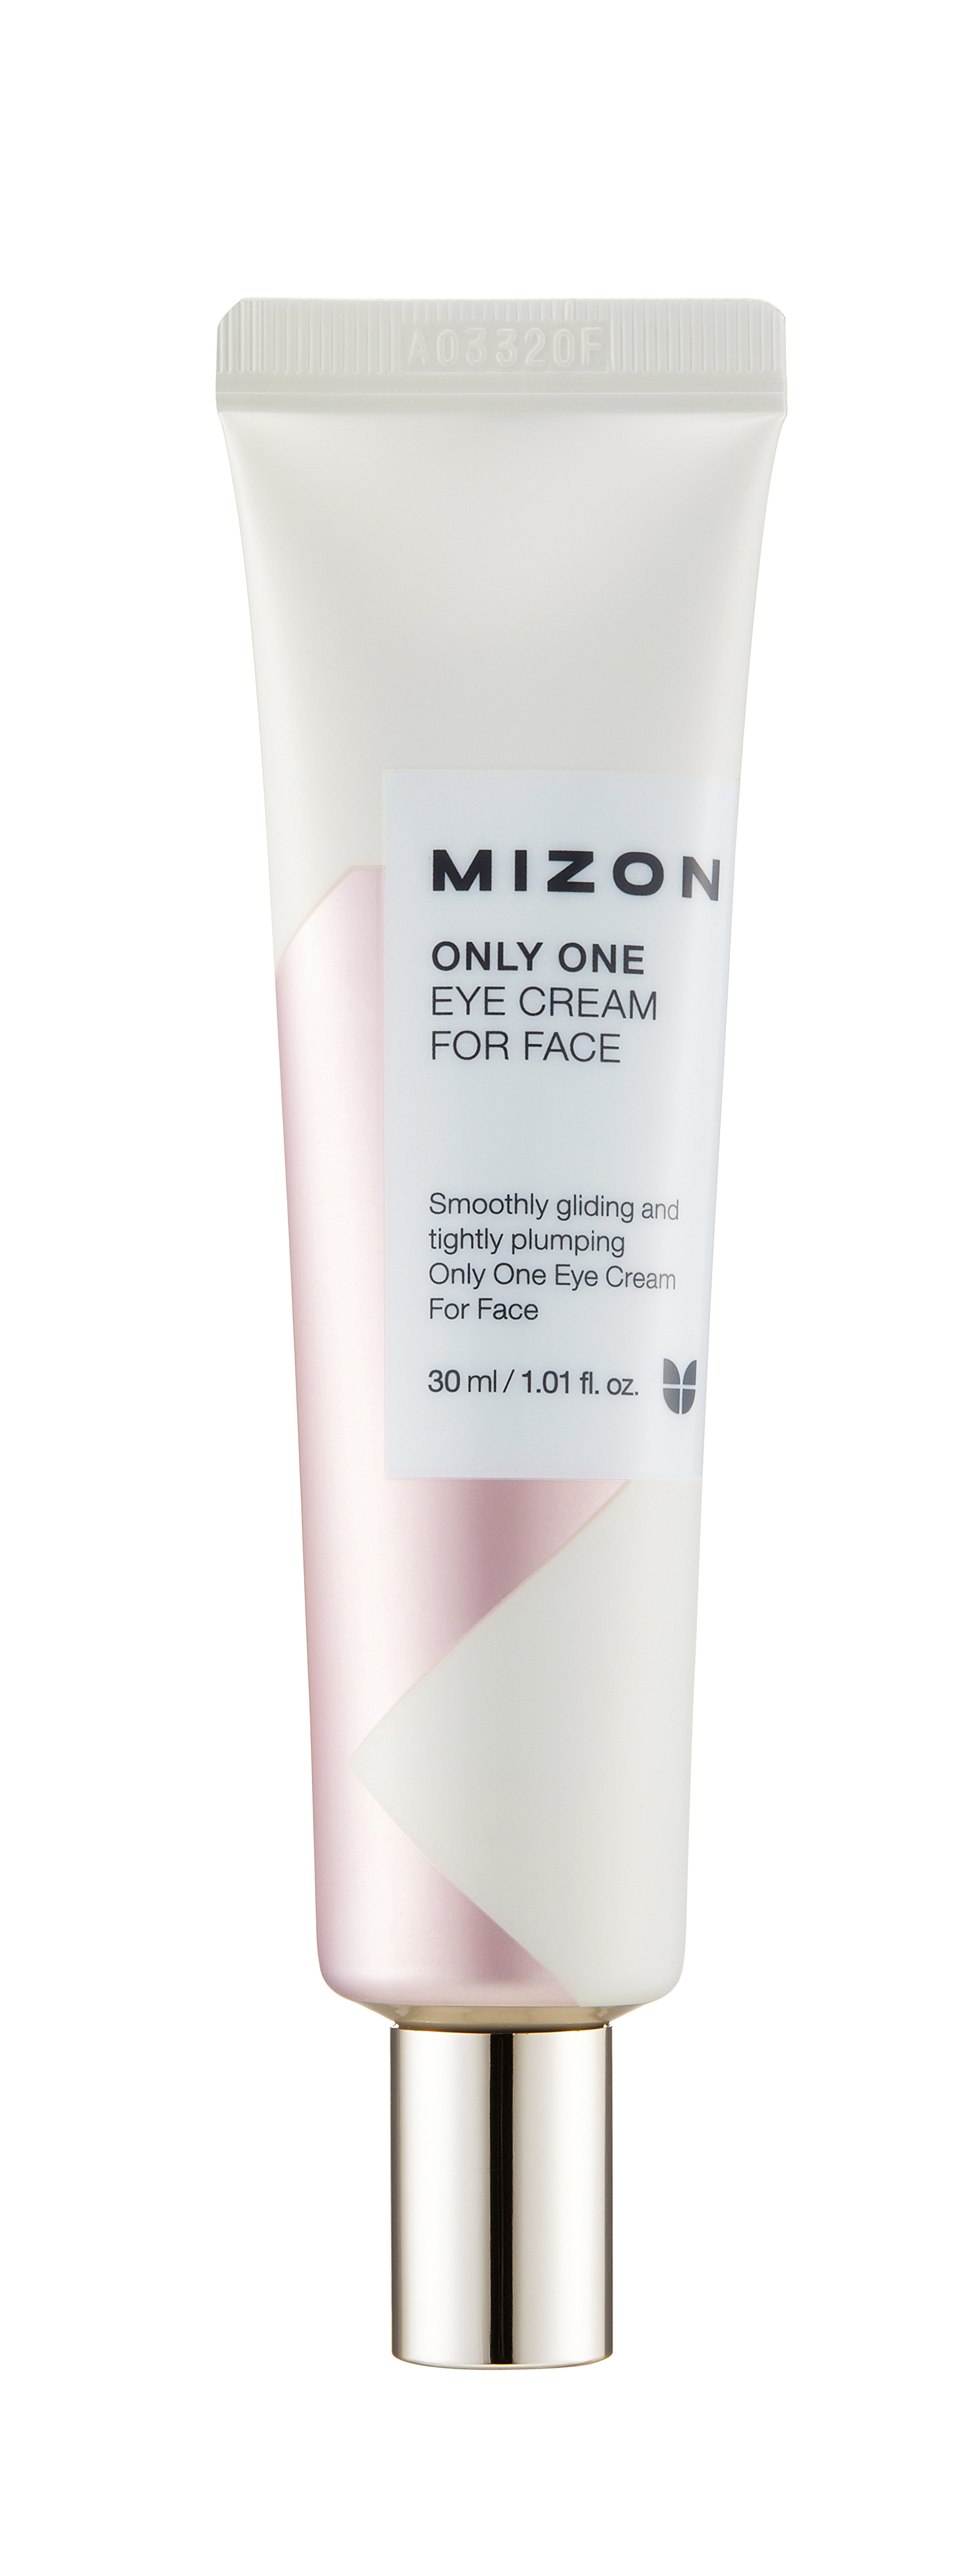 Mizon Očný a pleťový krém (Only One Eye Cream for Face) 30 ml